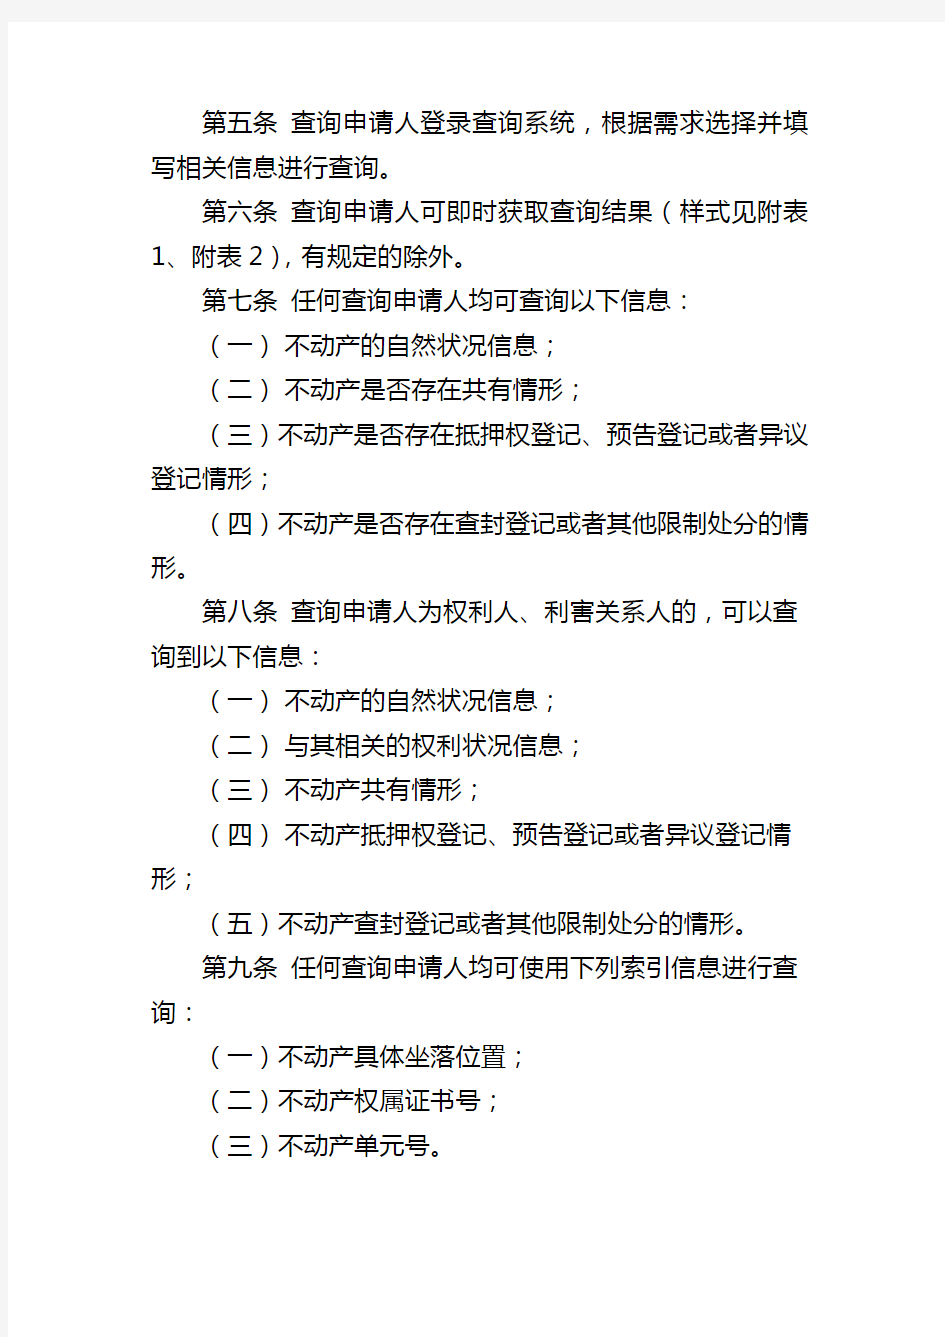 北京市不动产登记信息网上查询规则